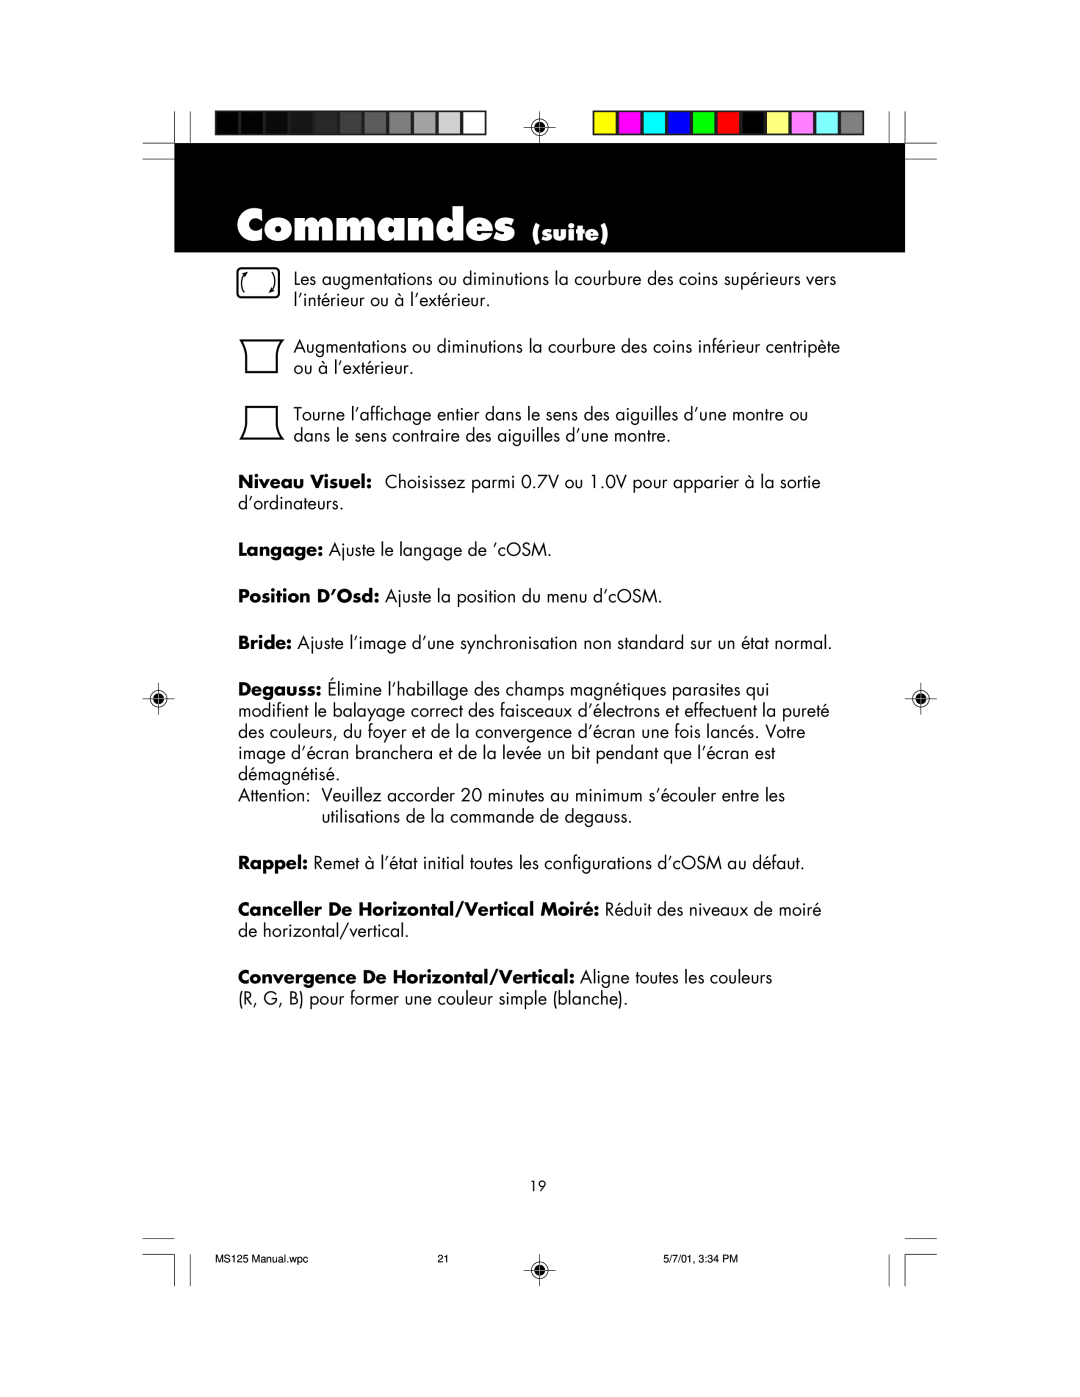 NEC MS125 manual Commandes suite 